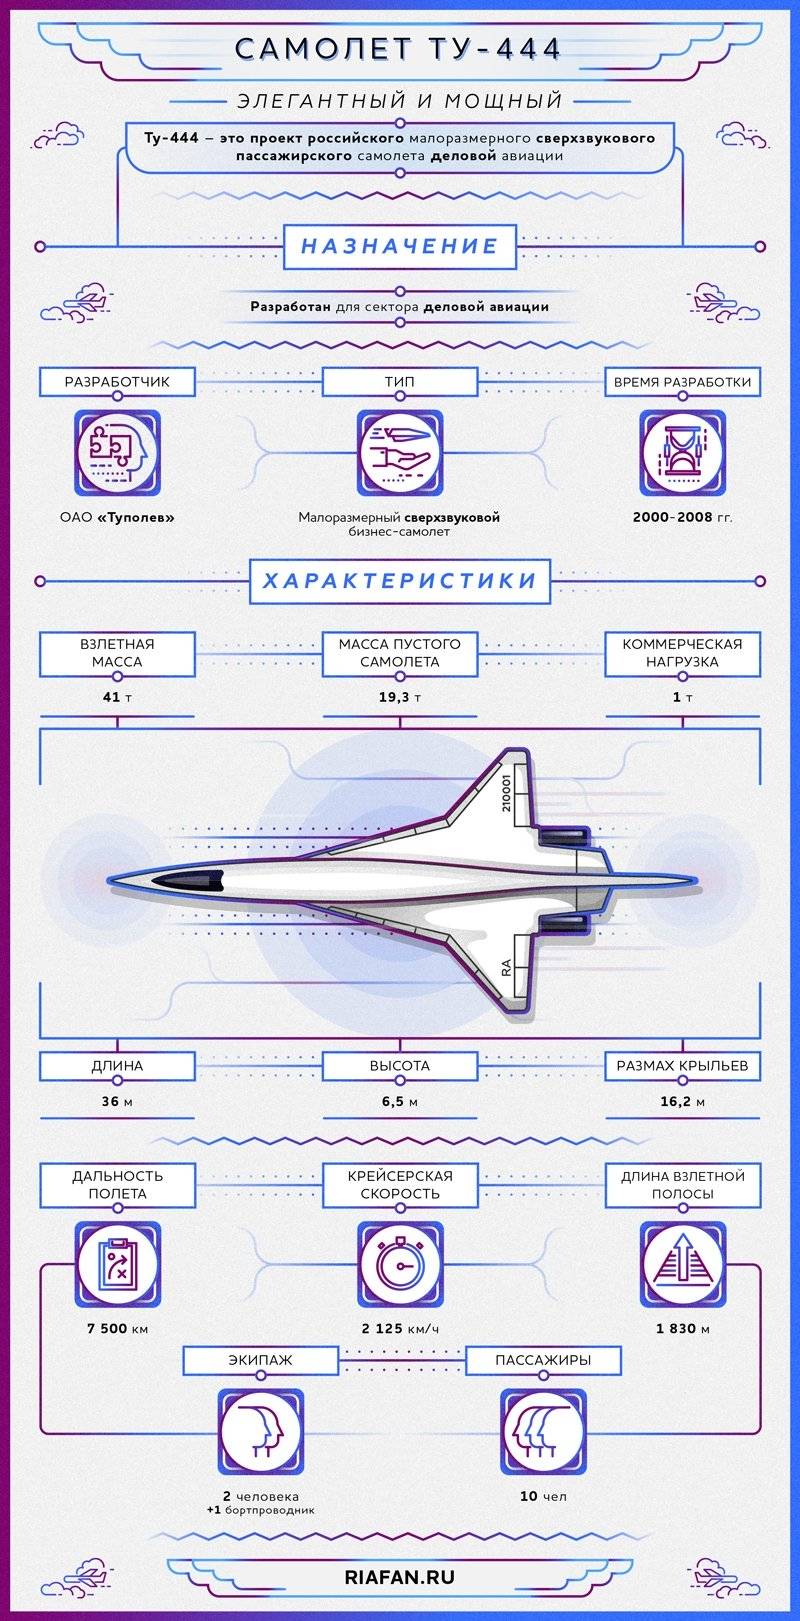 Проект сверхзвукового пассажирского самолёта Ту-444. Инфографика